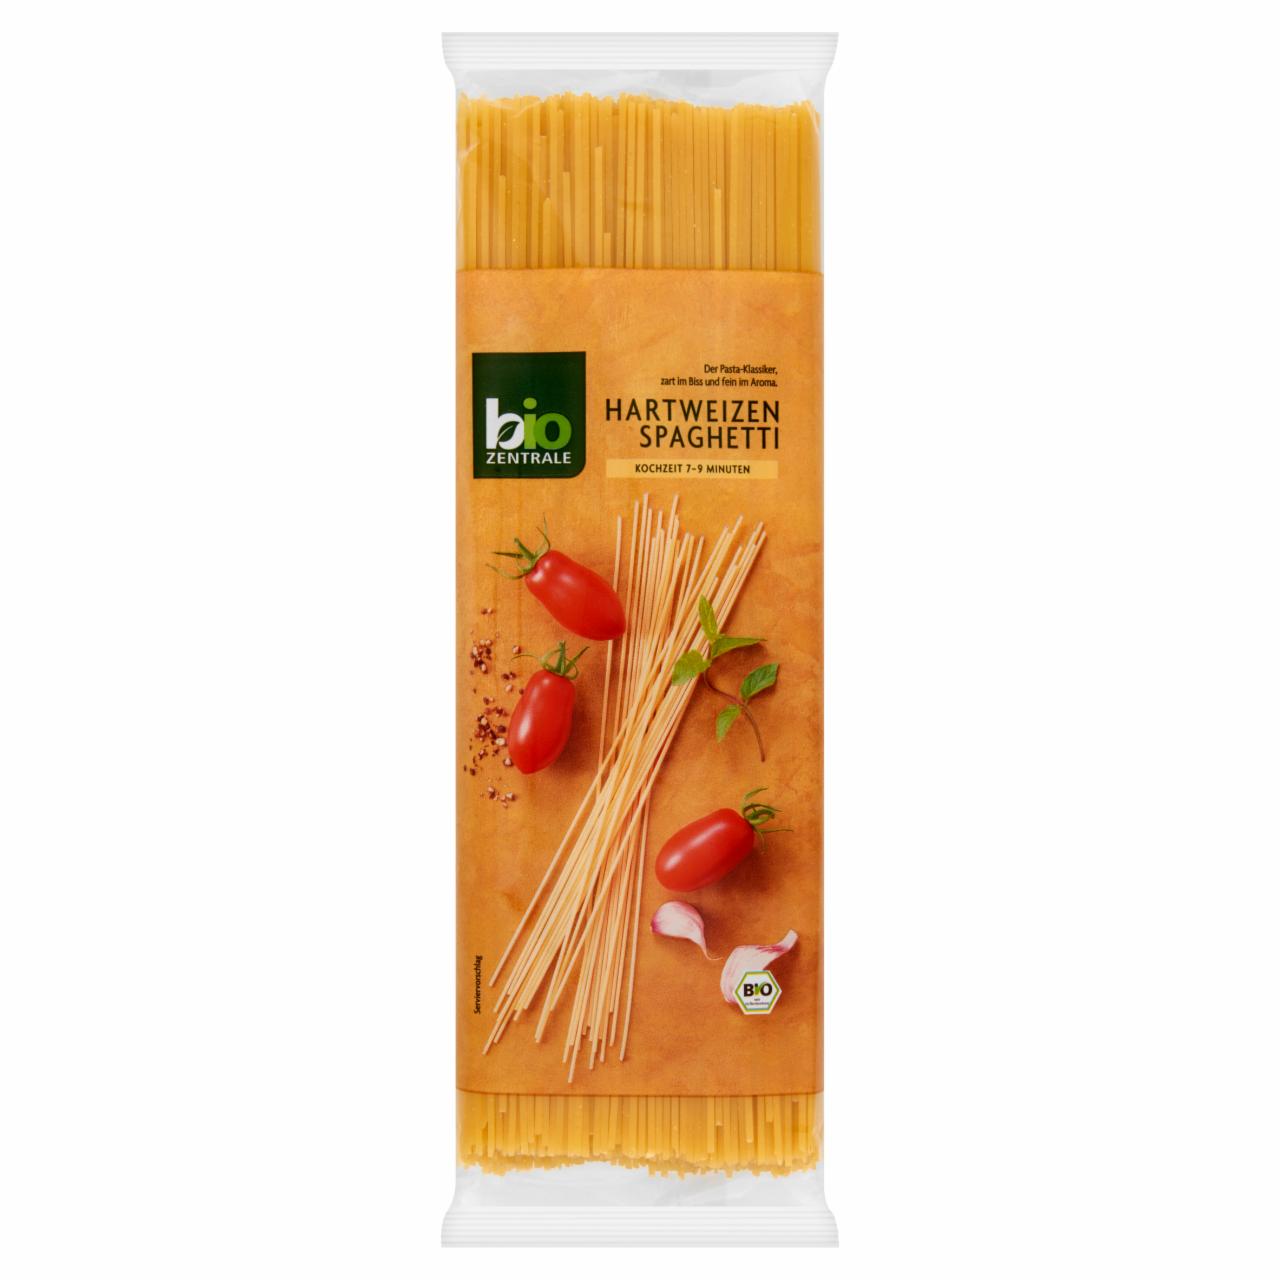 Képek - Bio Zentrale BIO durum spagetti tészta 500 g